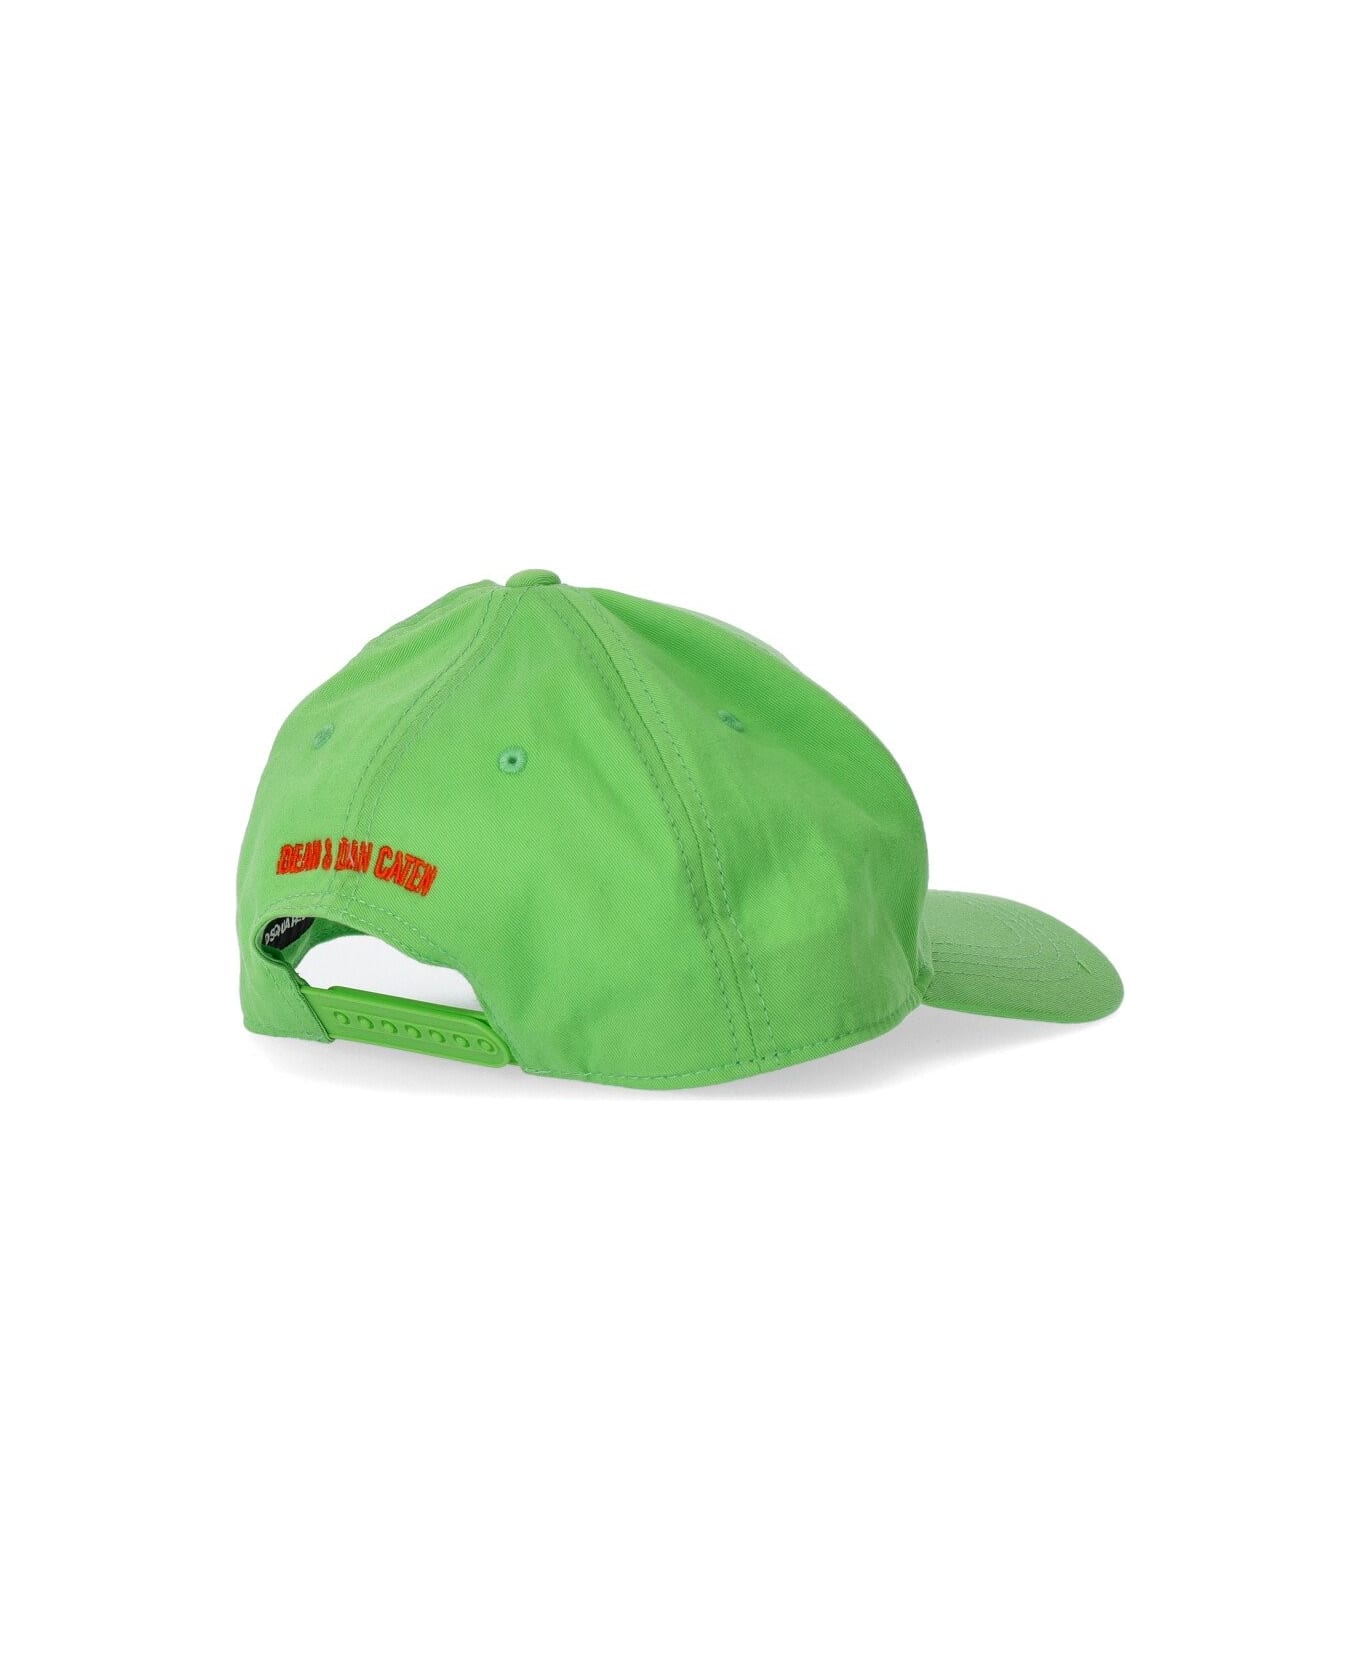 Dsquared2 Technicolor Acid Green Baseball Cap - Verde 帽子